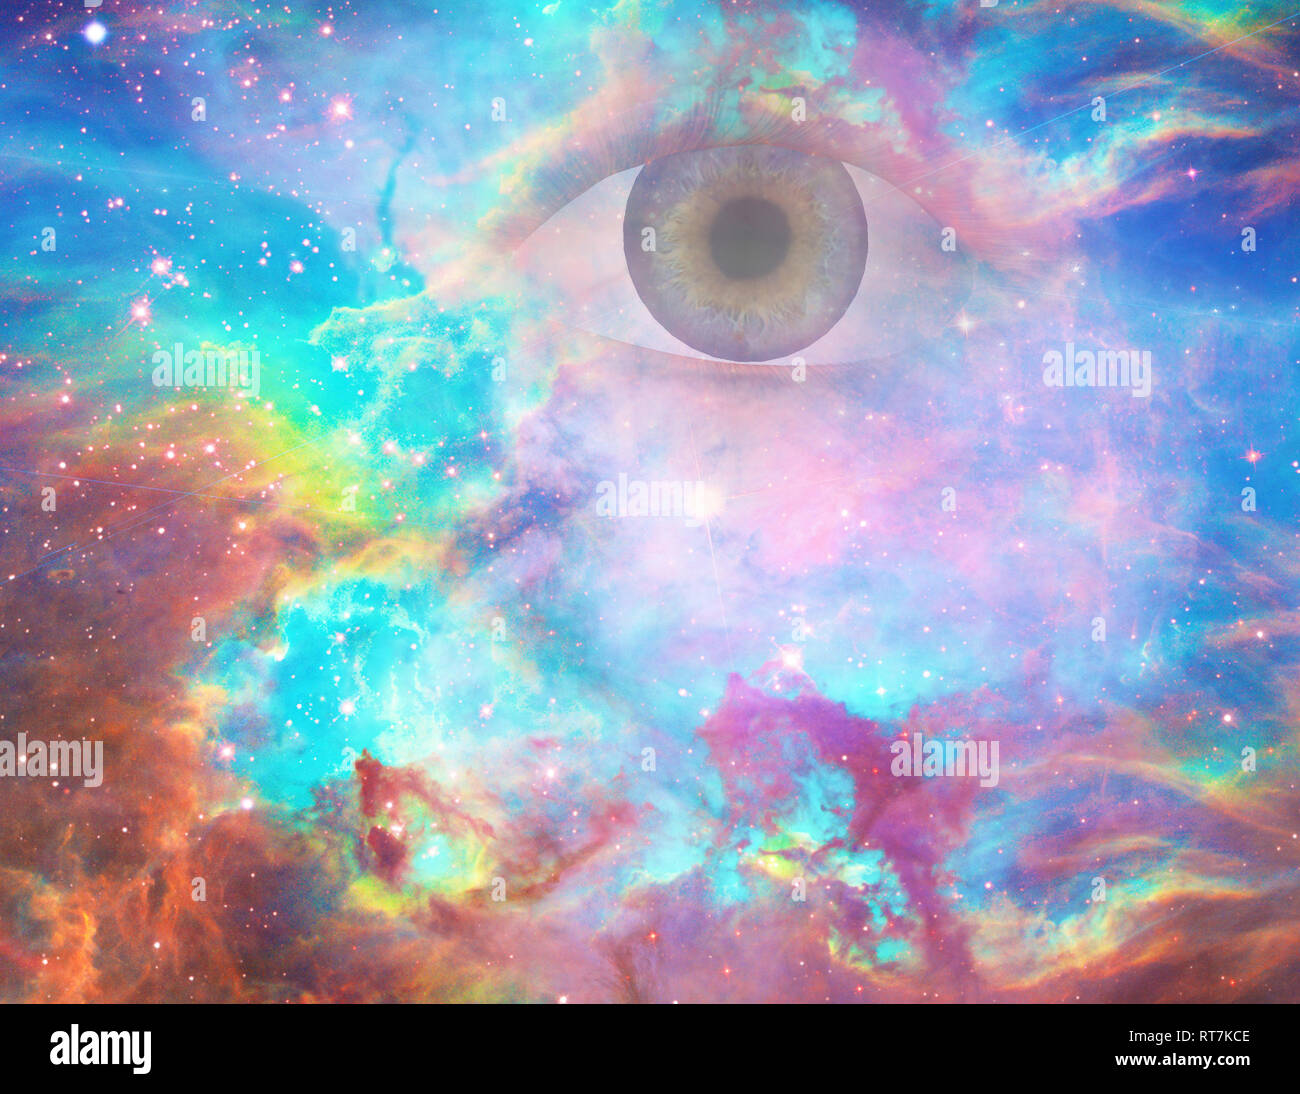 God's eye in vivid universe. Stock Photo